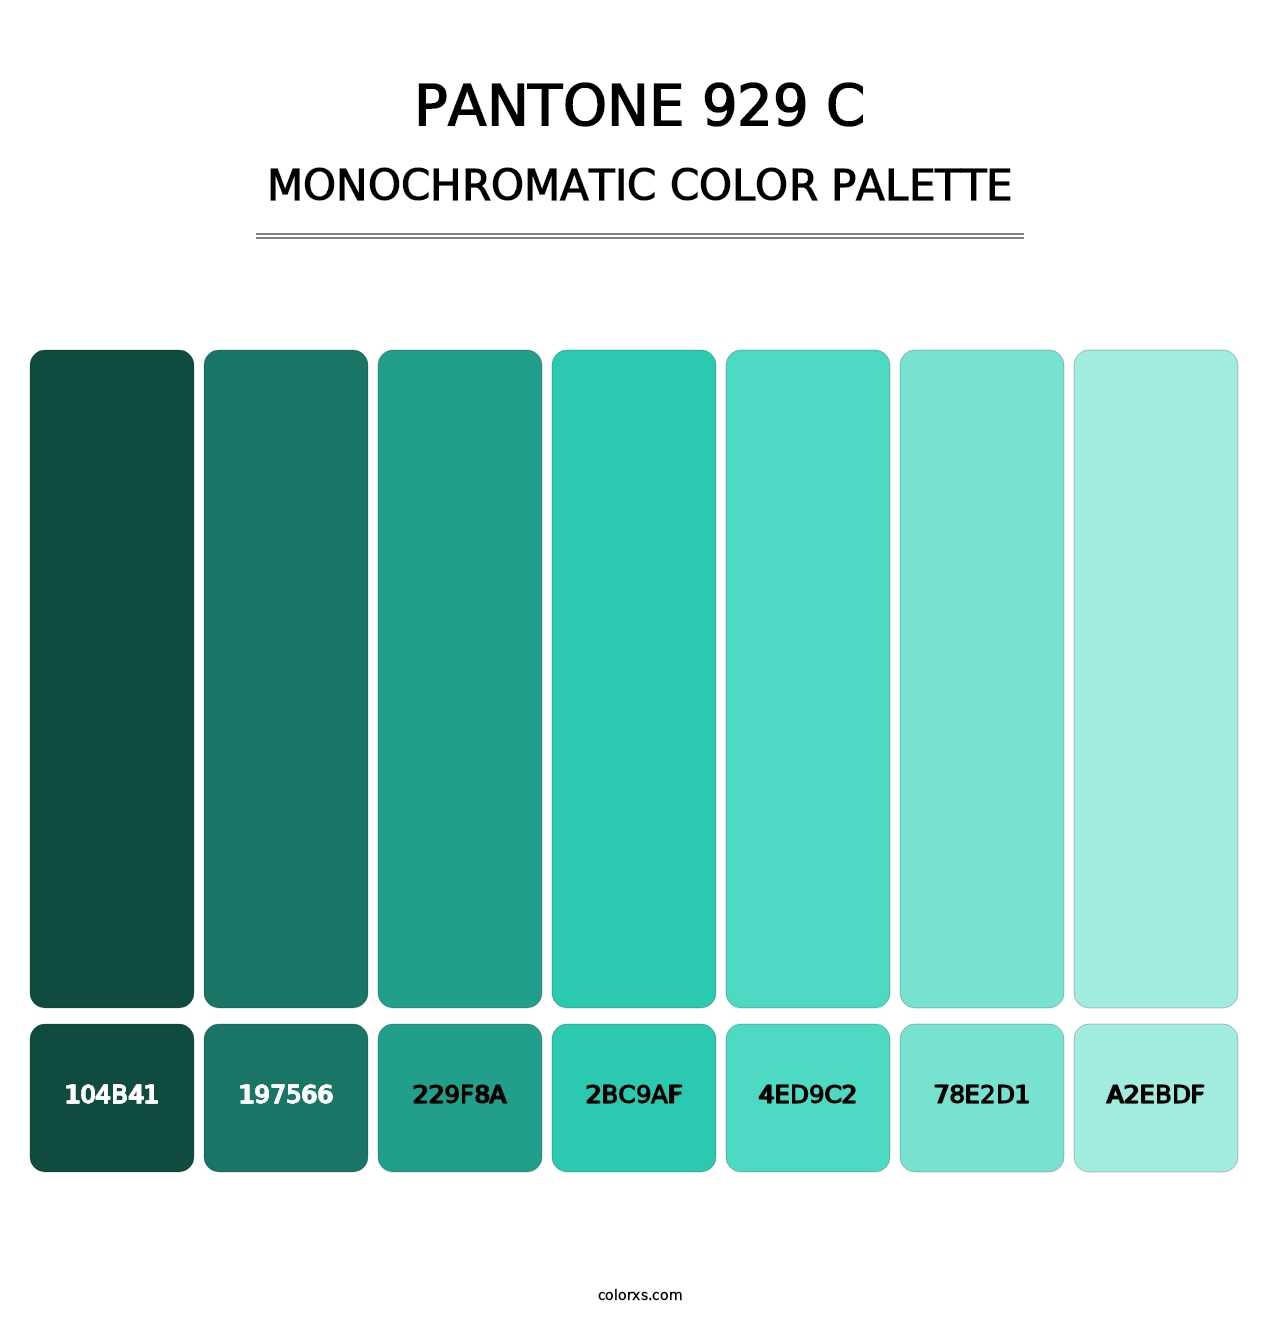 PANTONE 929 C - Monochromatic Color Palette